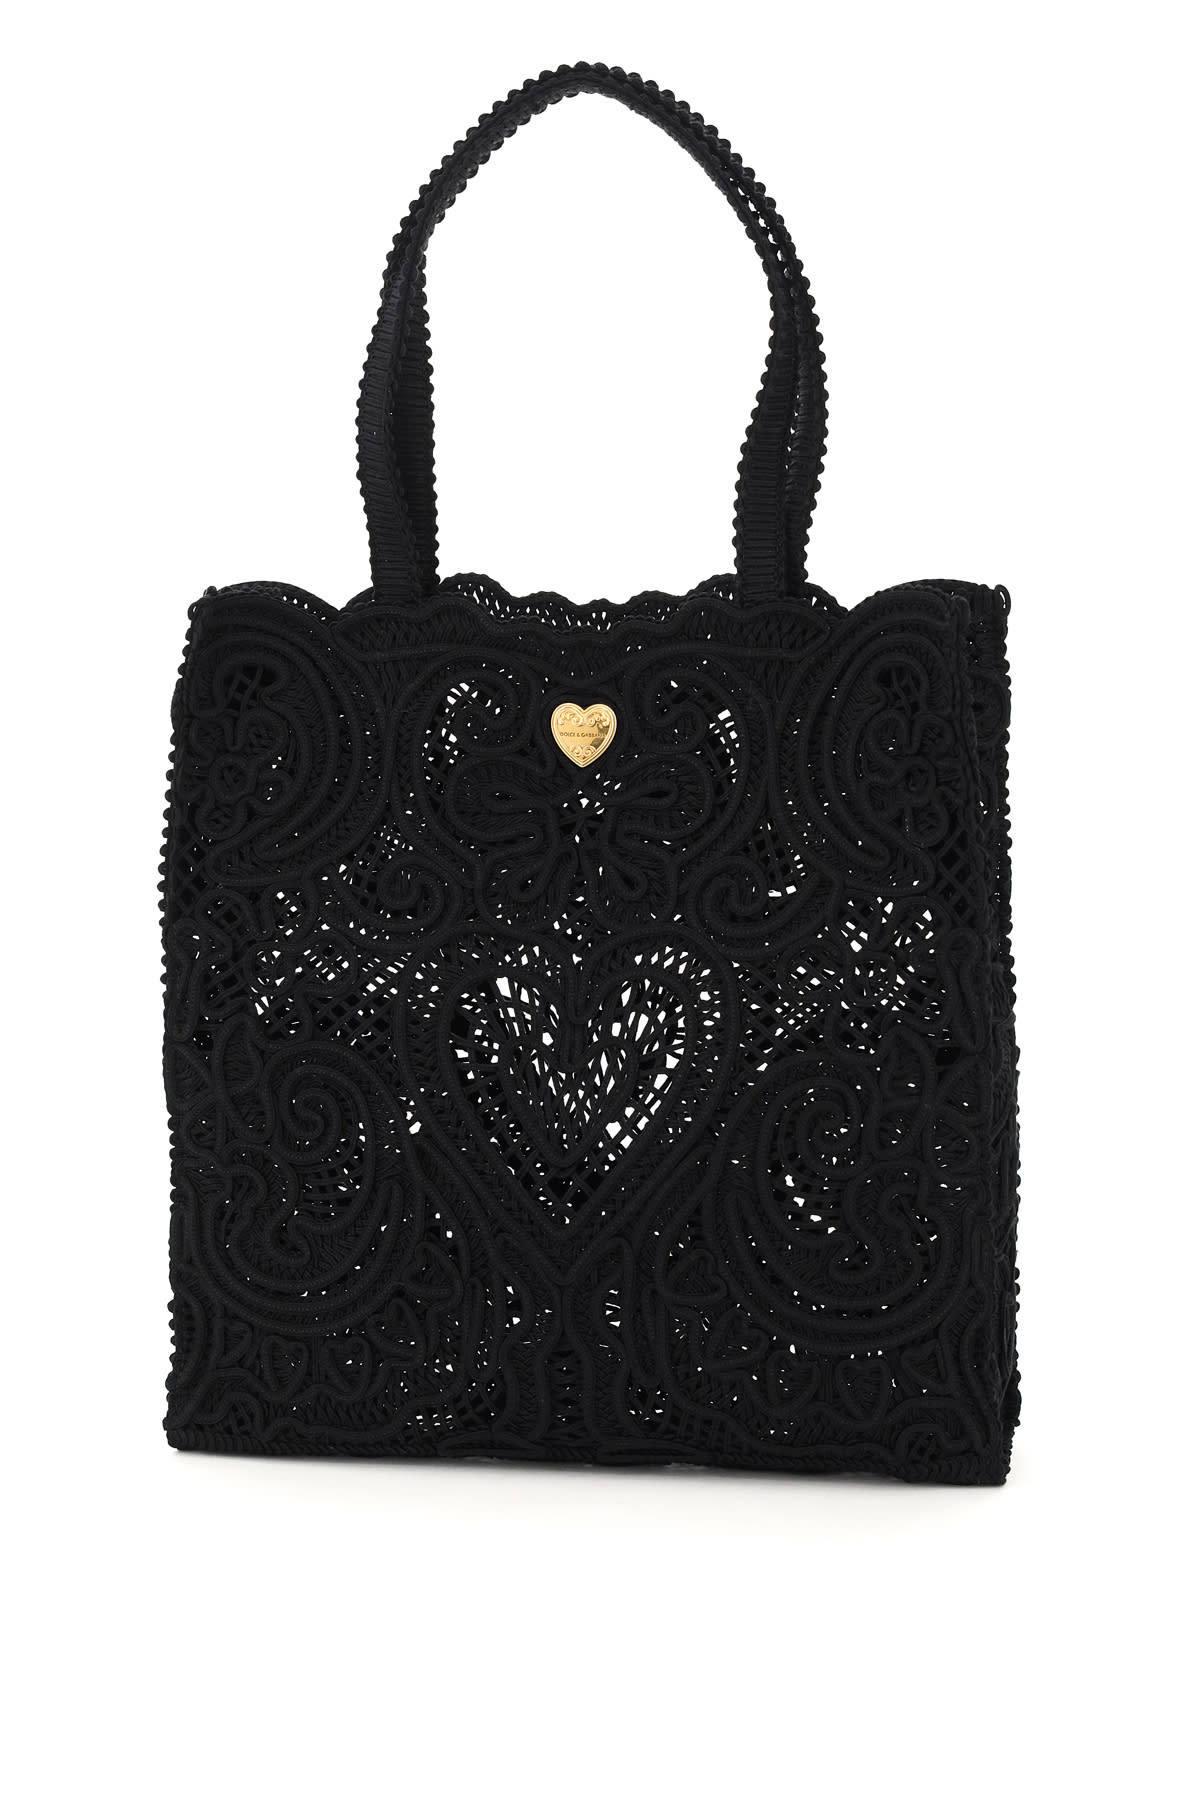 Dolce & Gabbana Beatrice Medium Tote Bag Cordonetto Lace